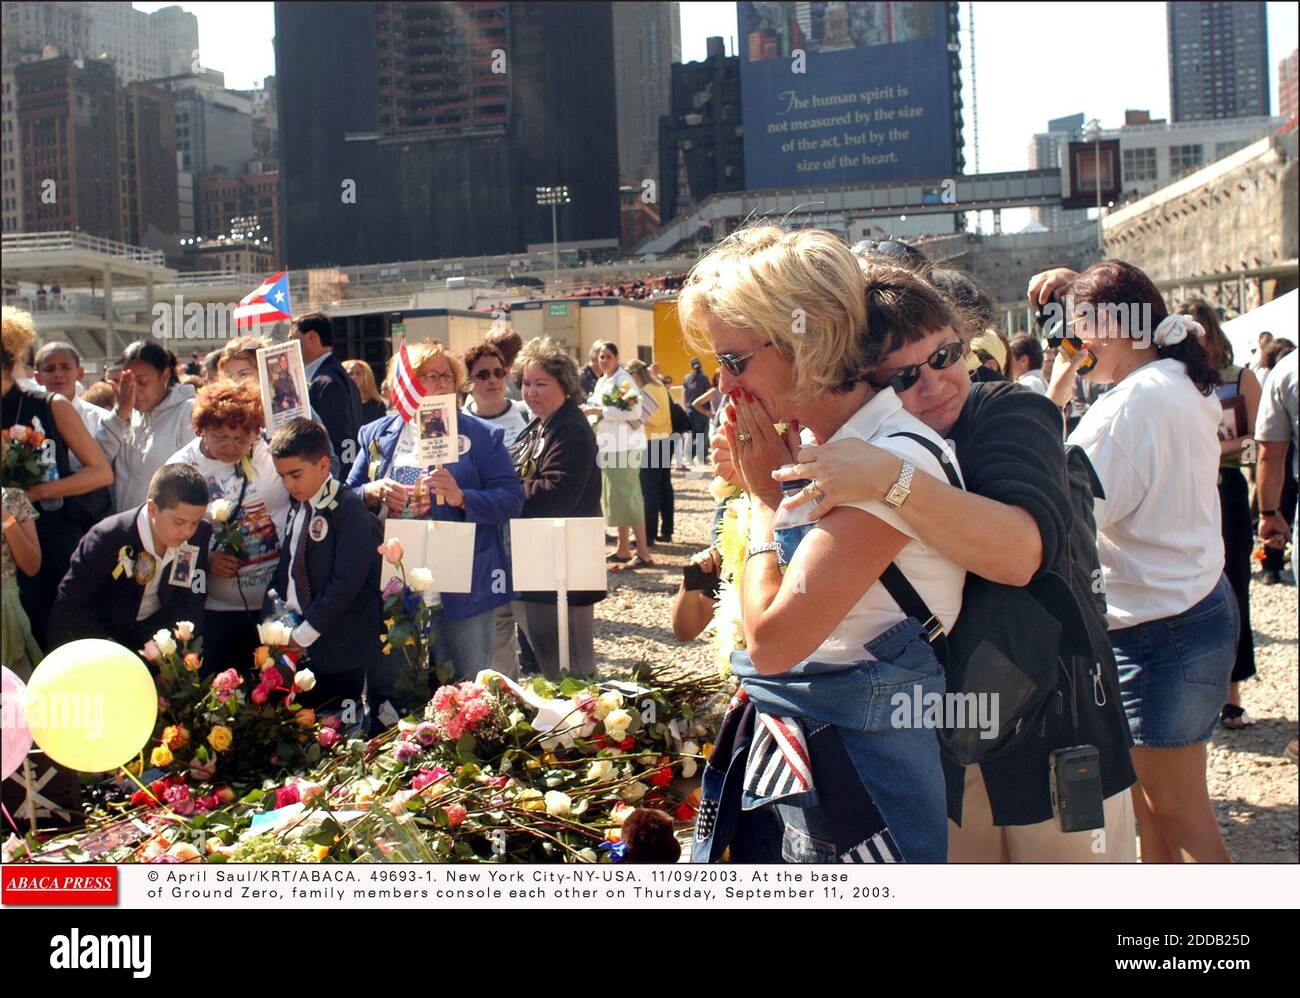 NO FILM, NO VIDEO, NO TV, NO DOCUMENTARIO - © APRILE SAUL/KRT/ABACA. 49693-1. New York City-NY-USA. 11/09/2003. Alla base di Ground Zero, i membri della famiglia si conpiano giovedì 11 settembre 2003. Foto Stock